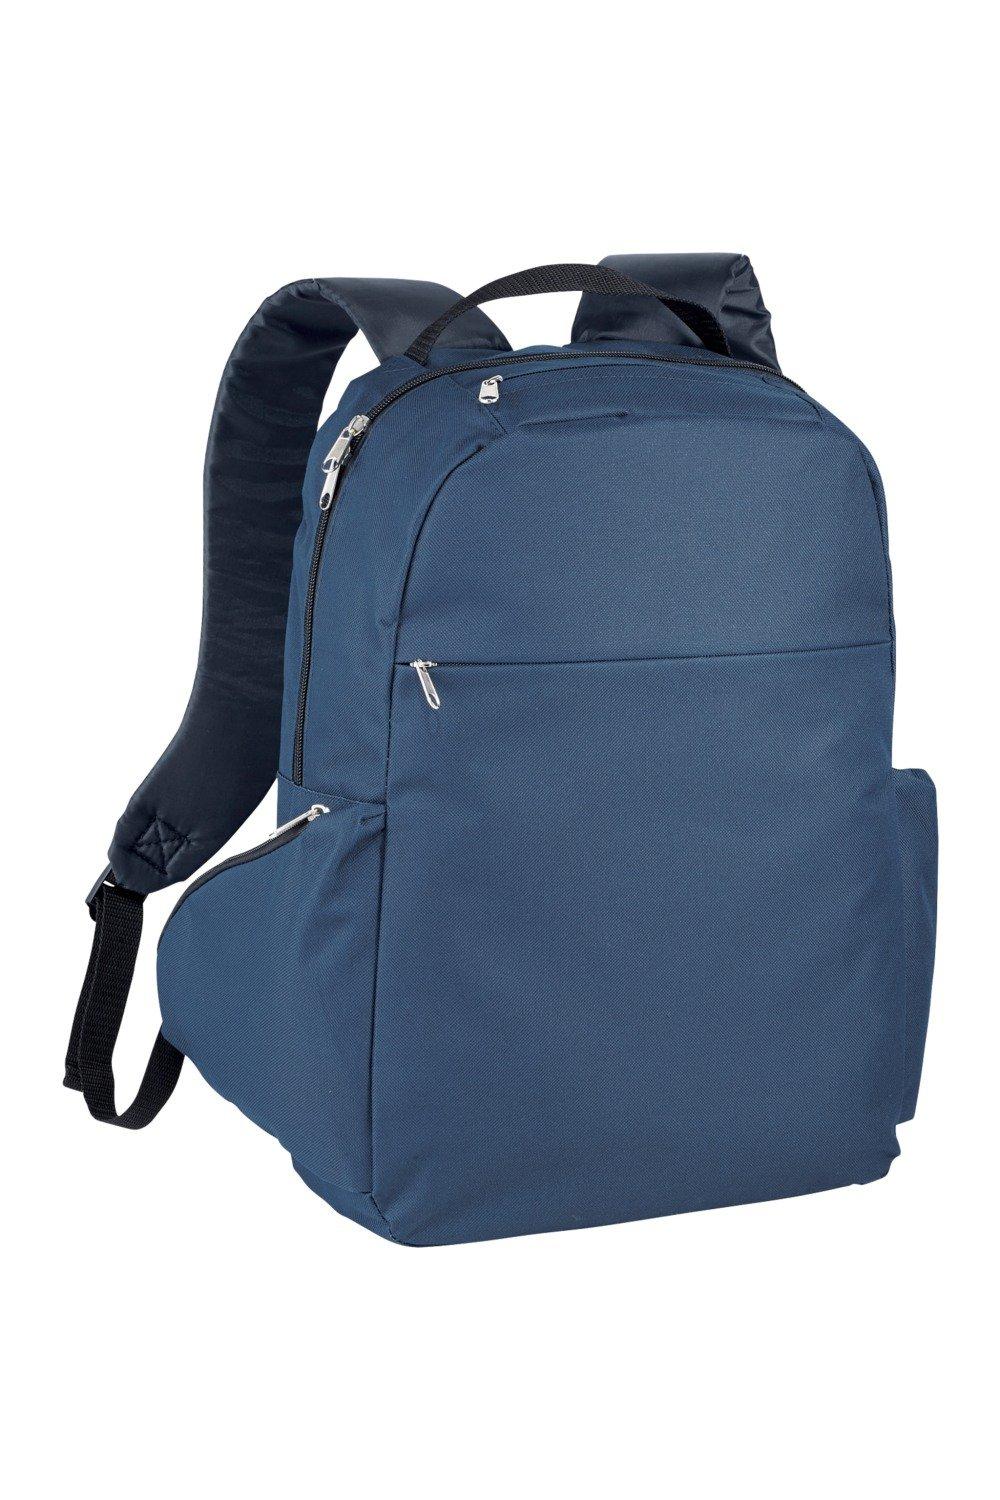 Тонкий рюкзак для ноутбука с диагональю 15,6 дюйма Bullet, темно-синий рюкзак для ноутбука seasons 15 6 дюйма антивандальный msp3010 серый